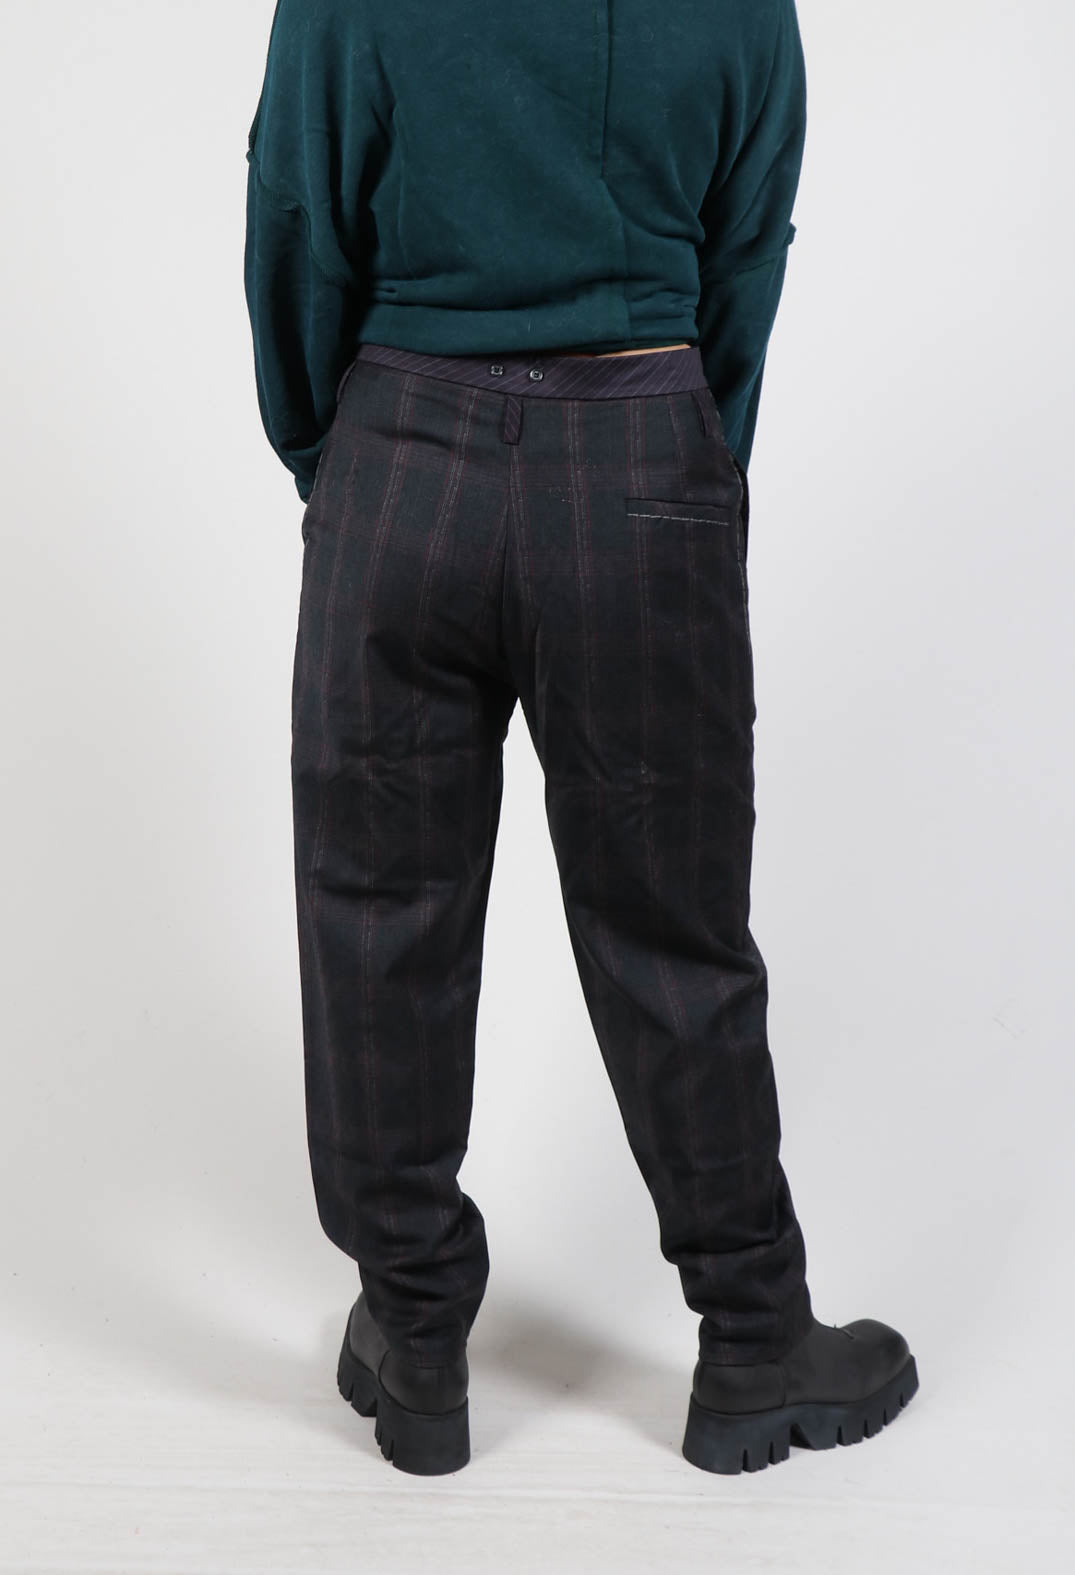 Stitch Tartan Trousers in Original Grey